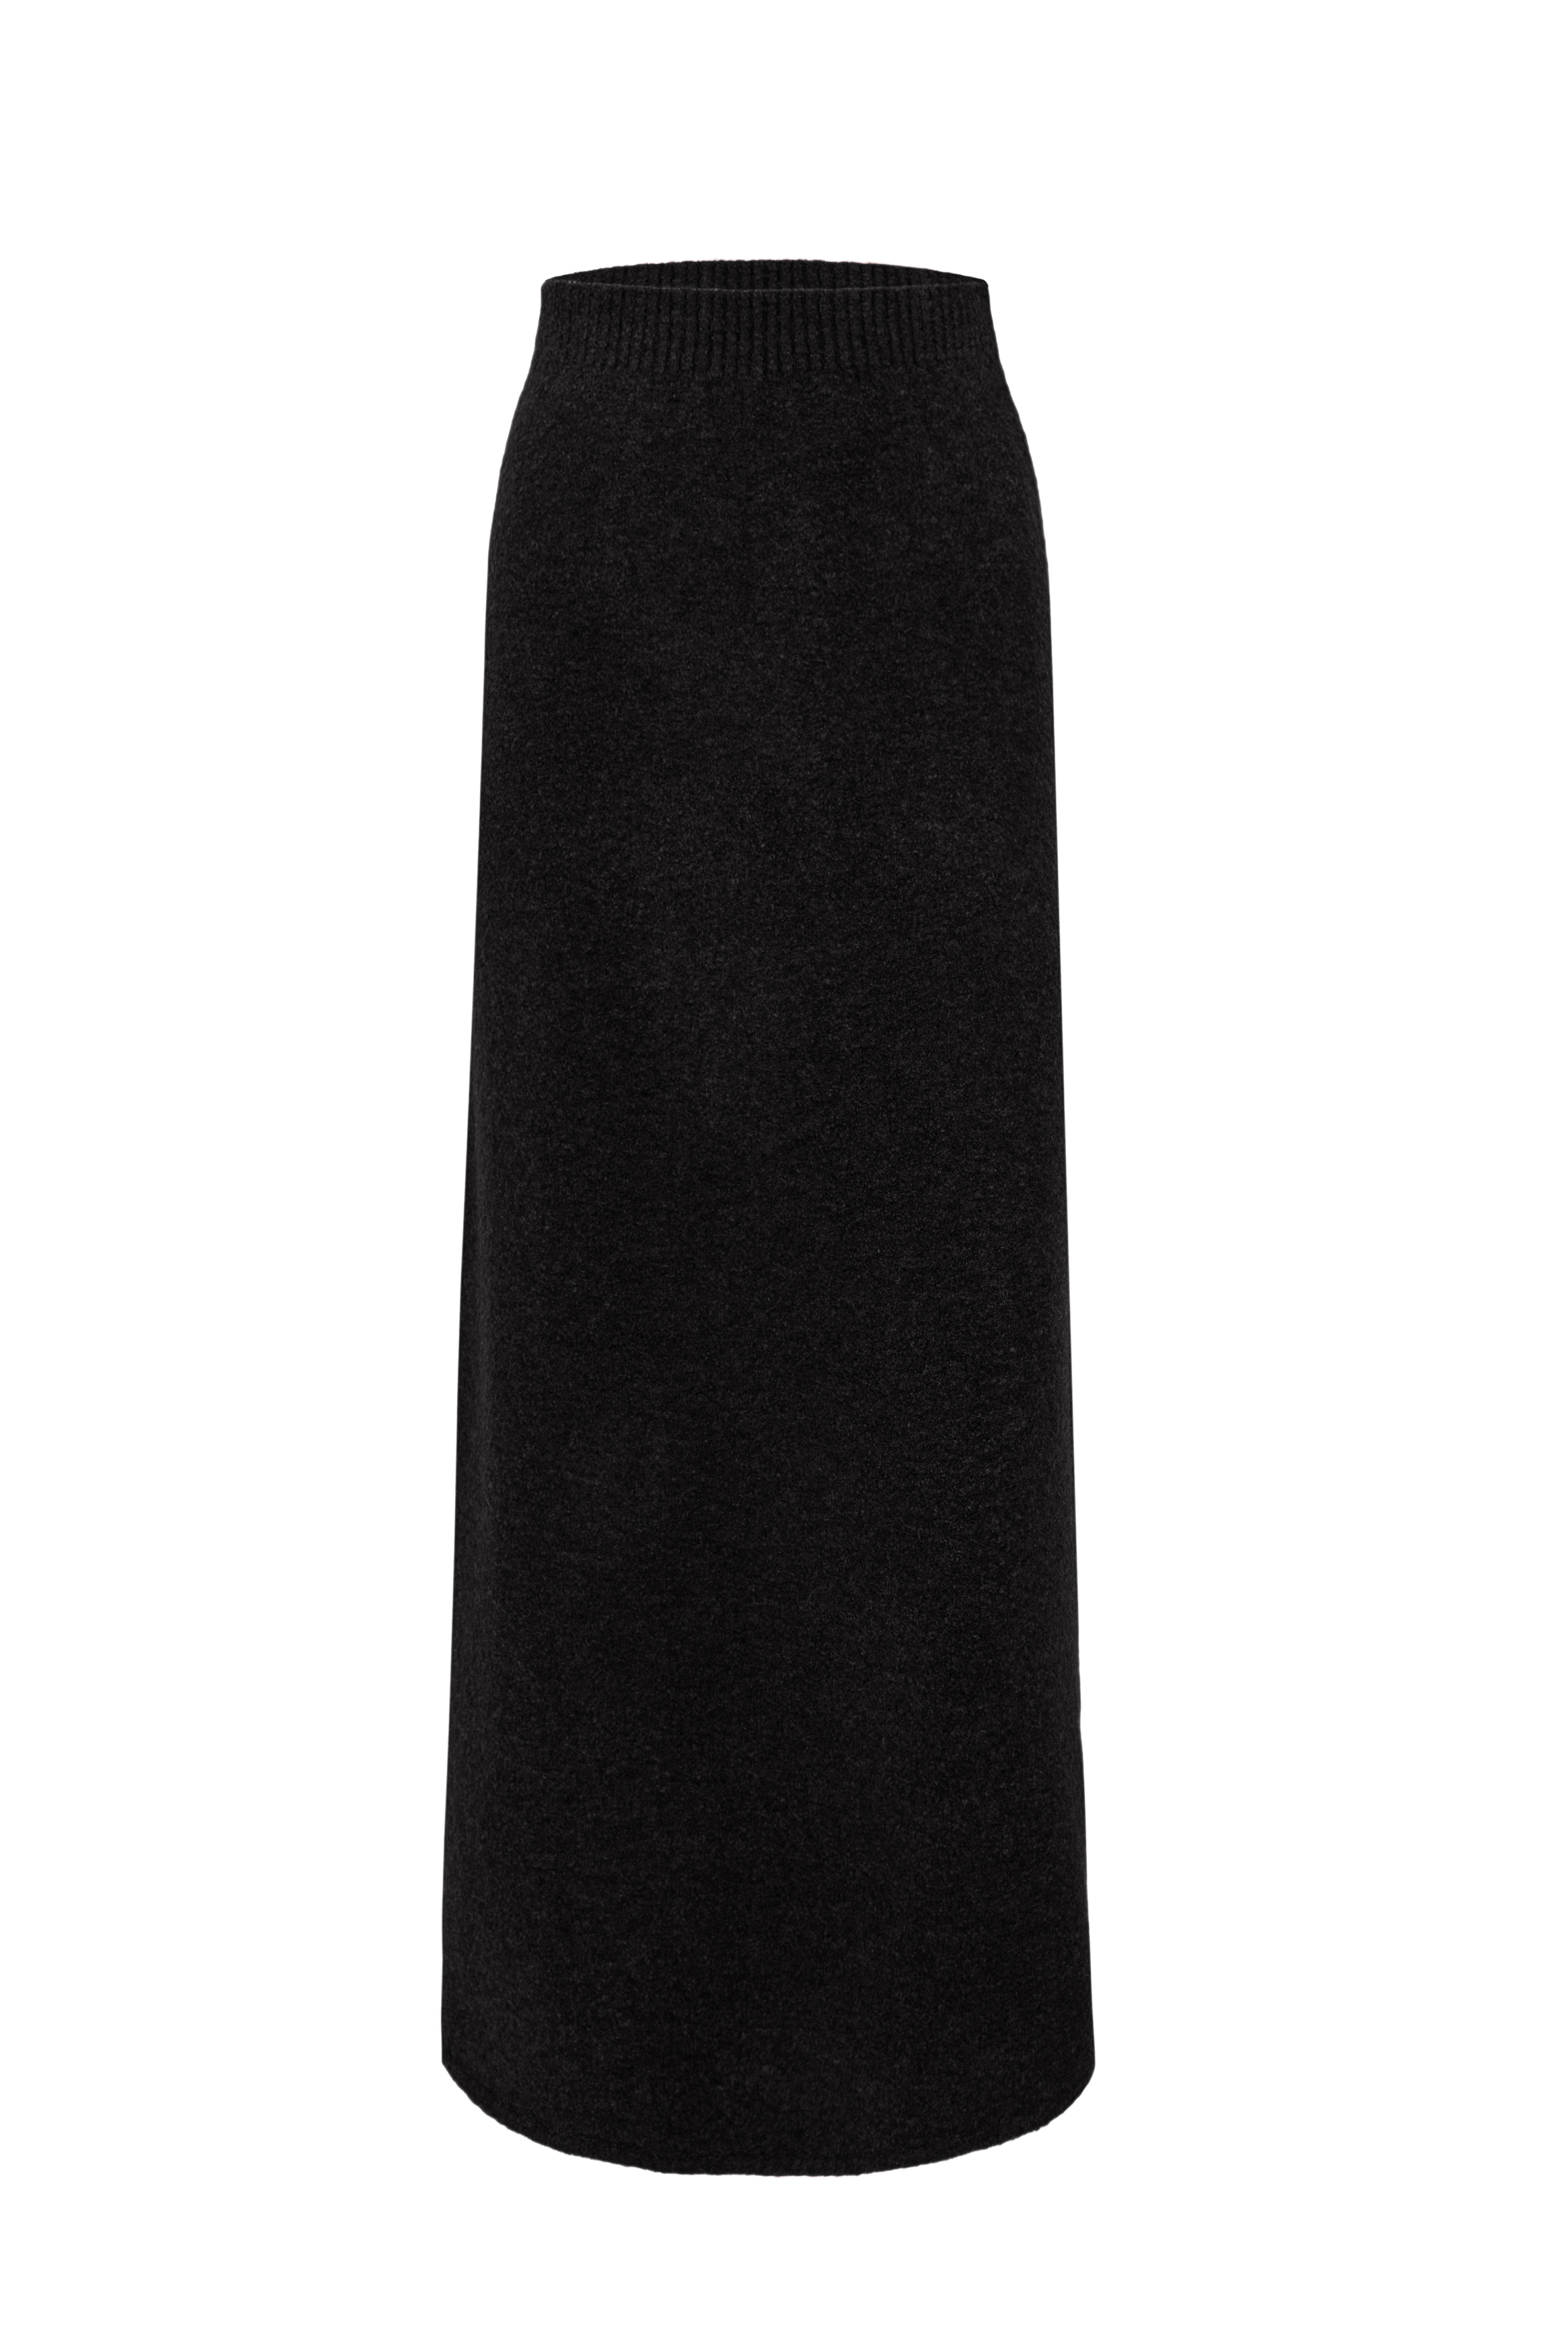 Skirt 4914-01 Black from BRUSNiKA